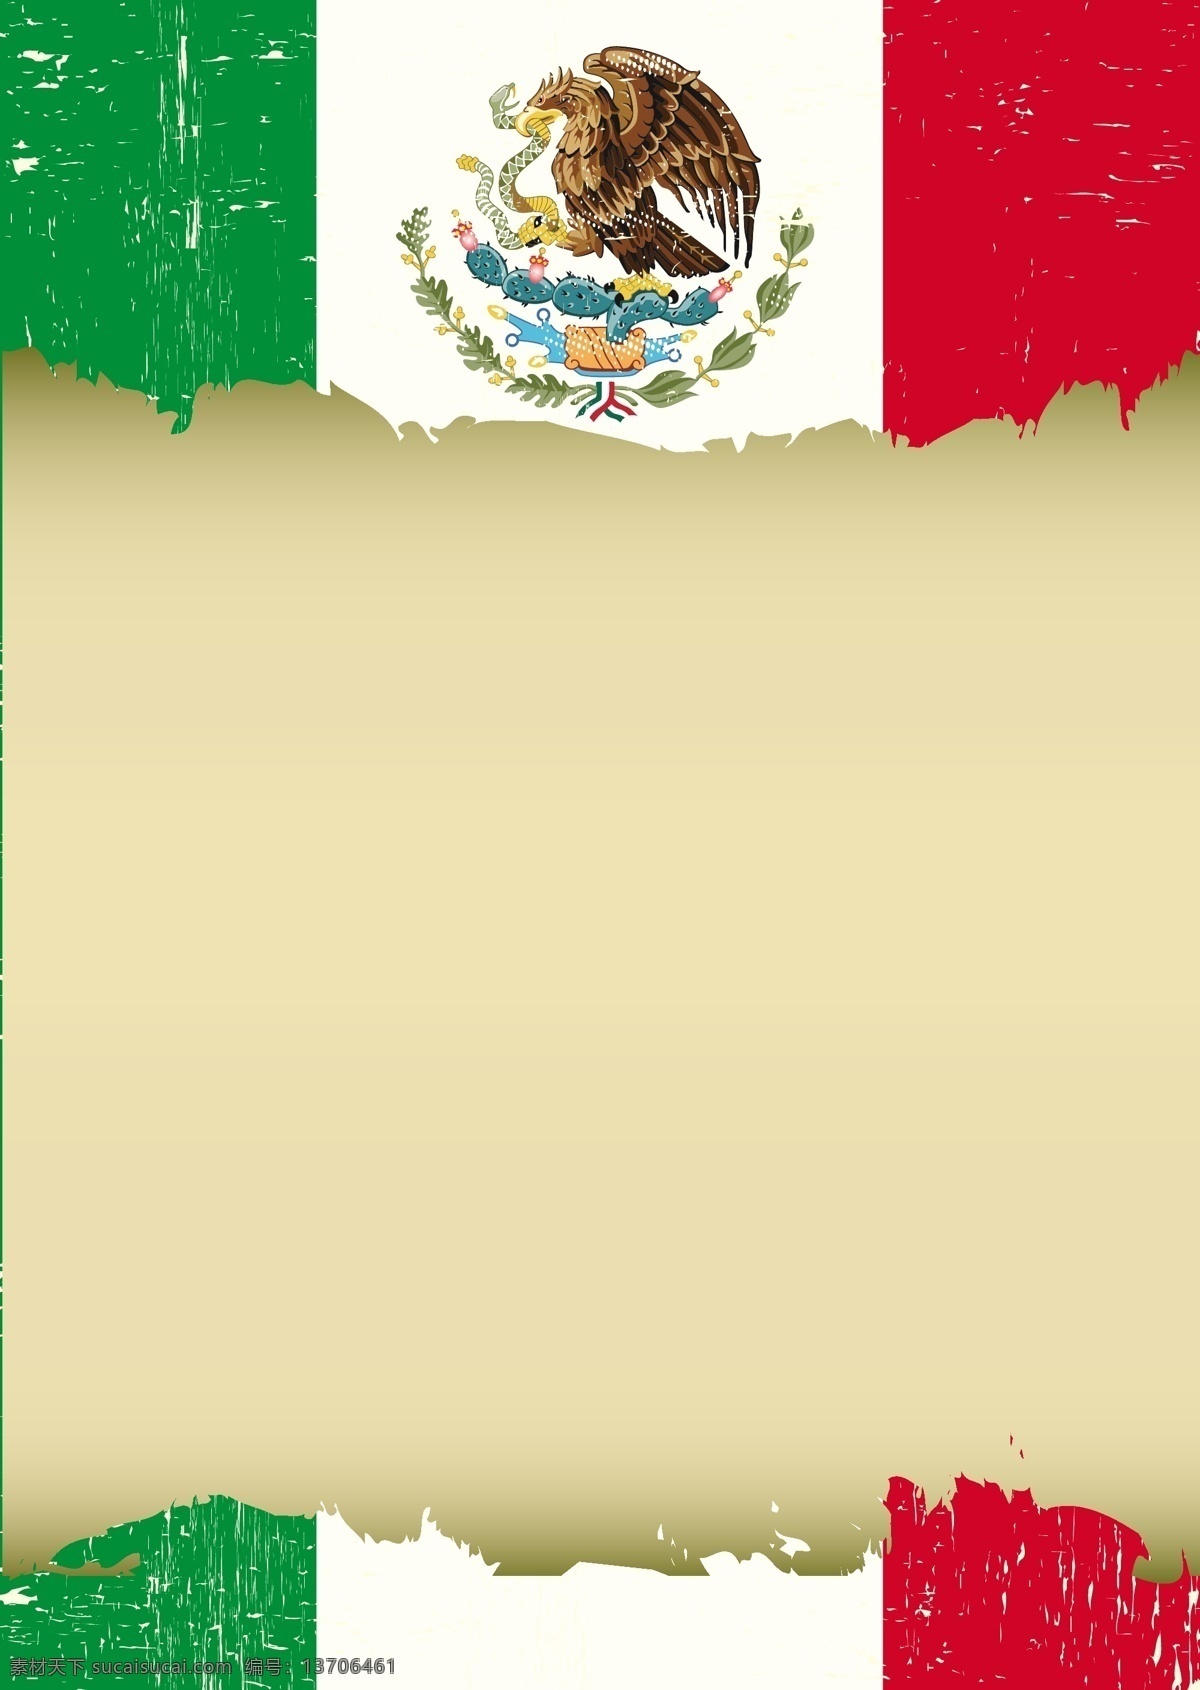 复古 墨西哥 国旗 墨西哥国旗 矢量图案 边框底纹 背景图案 生活百科 矢量素材 黄色